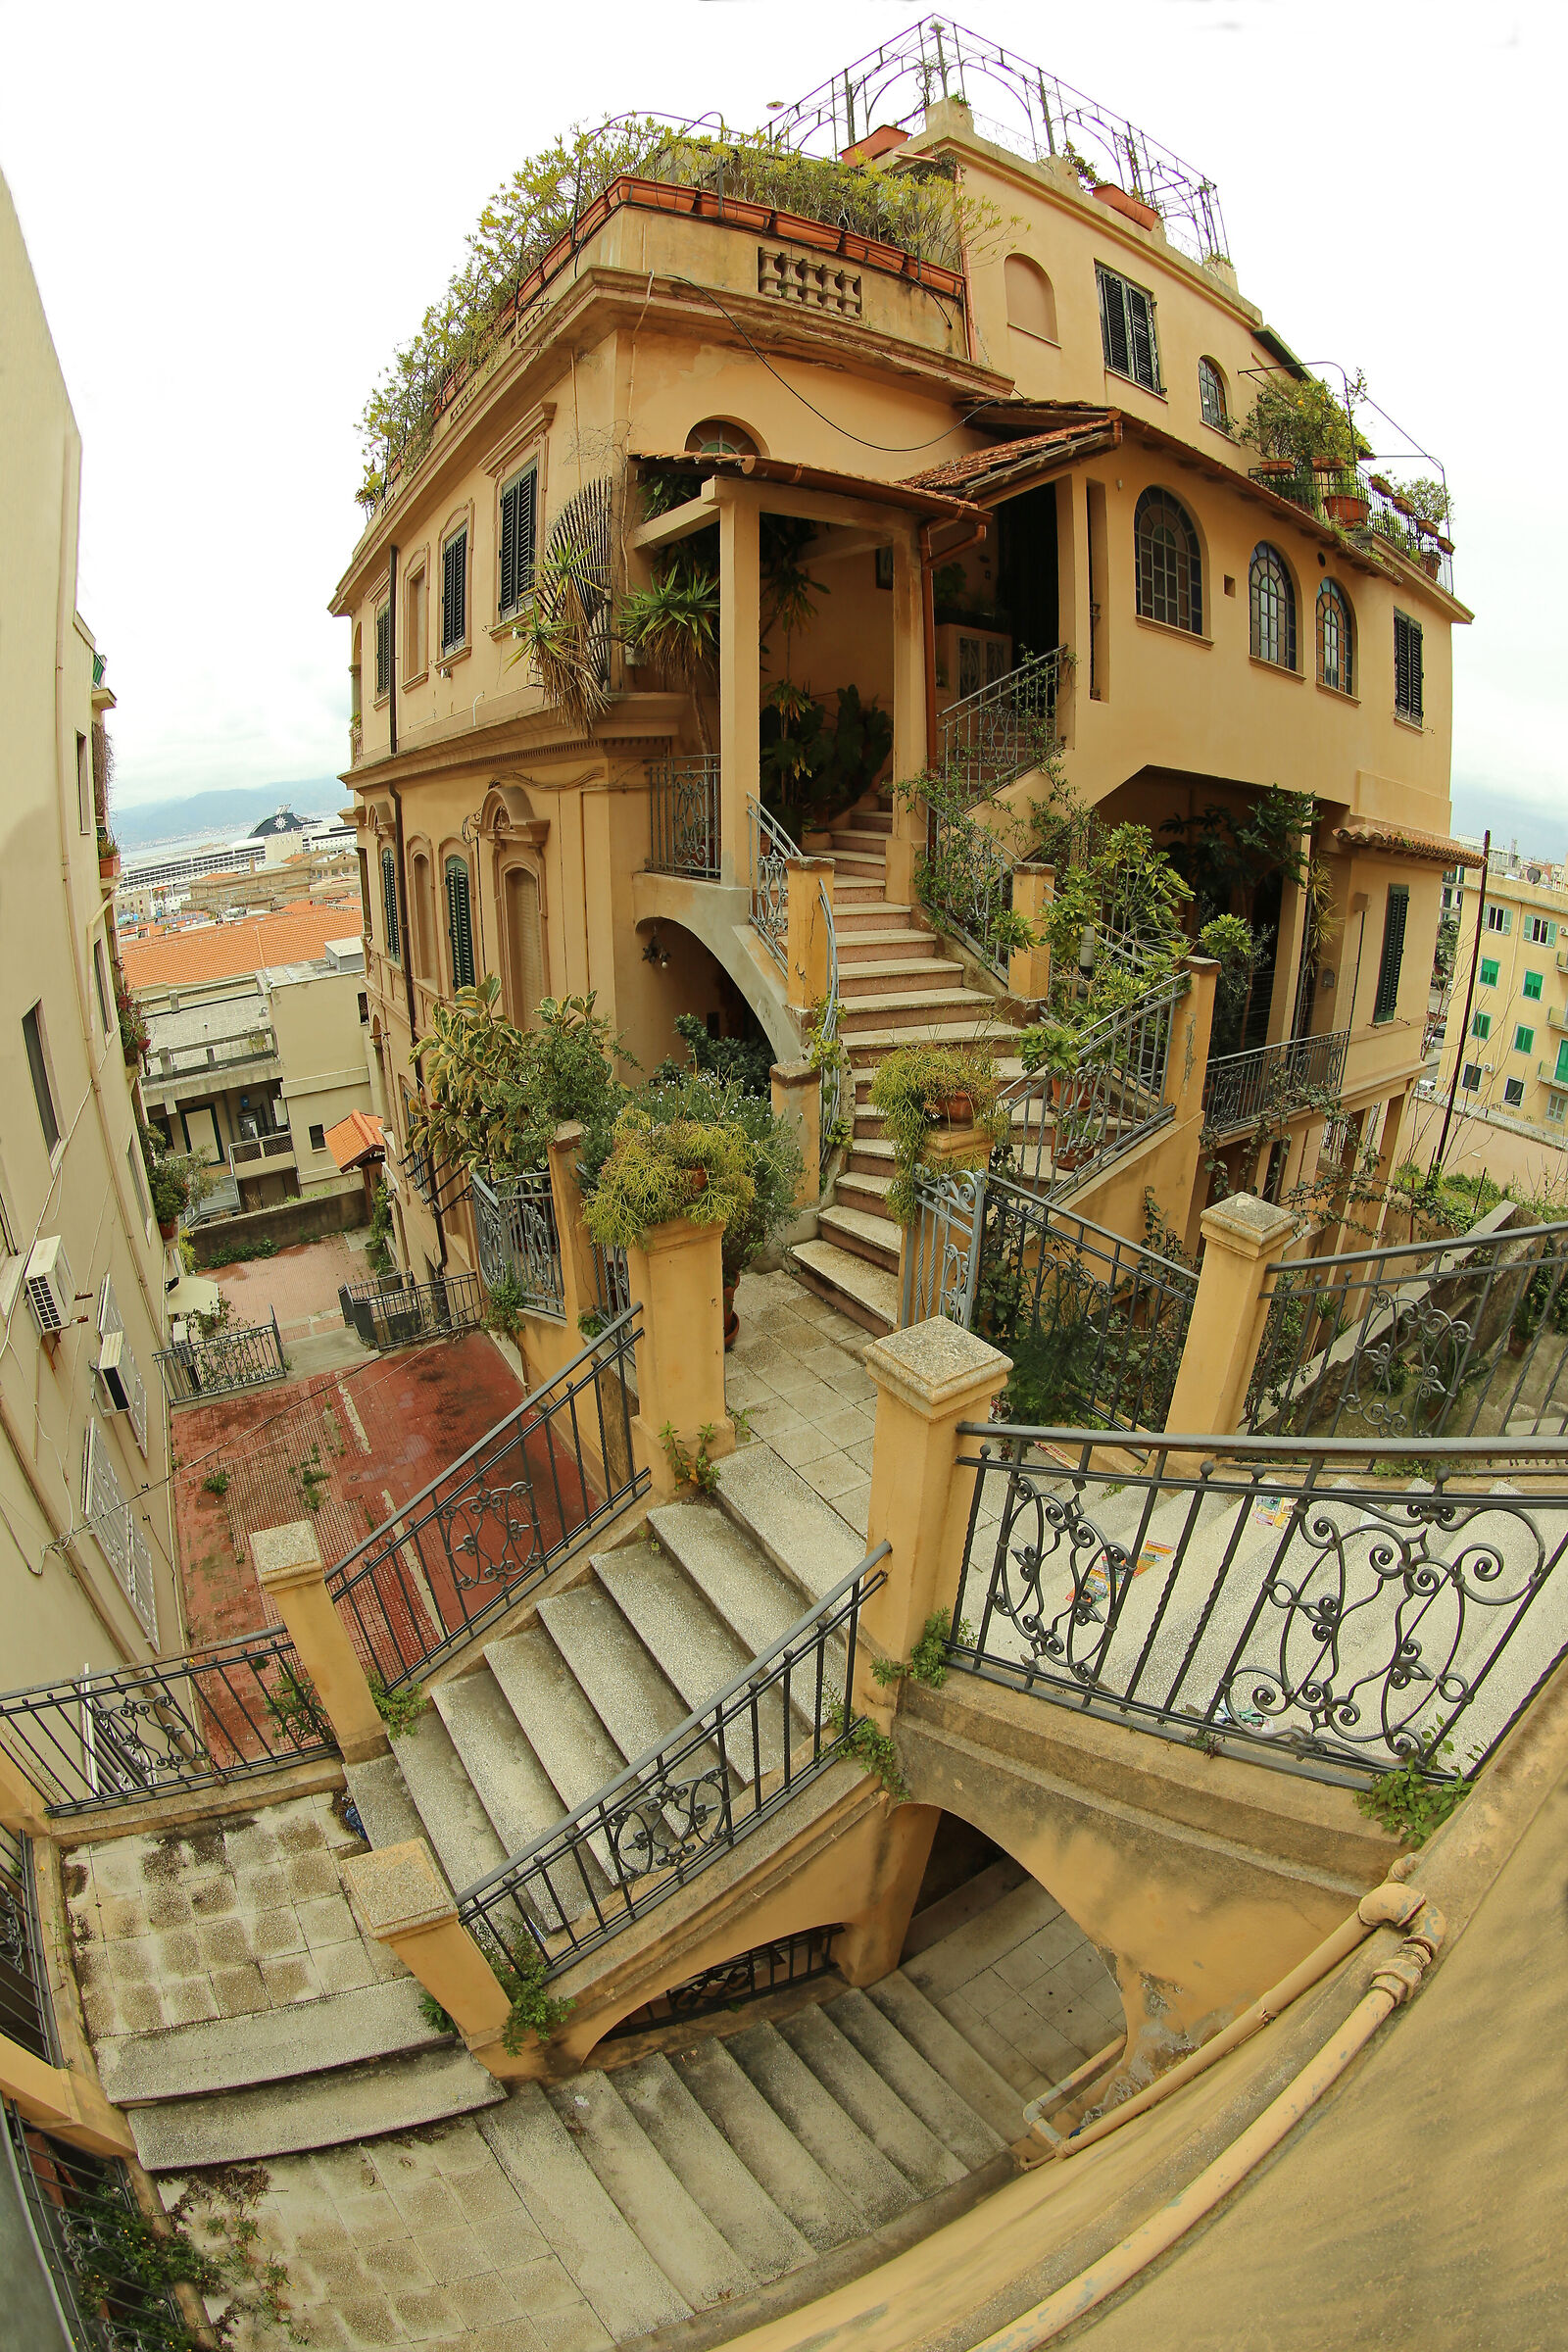 Messina glimpse in Escher style...